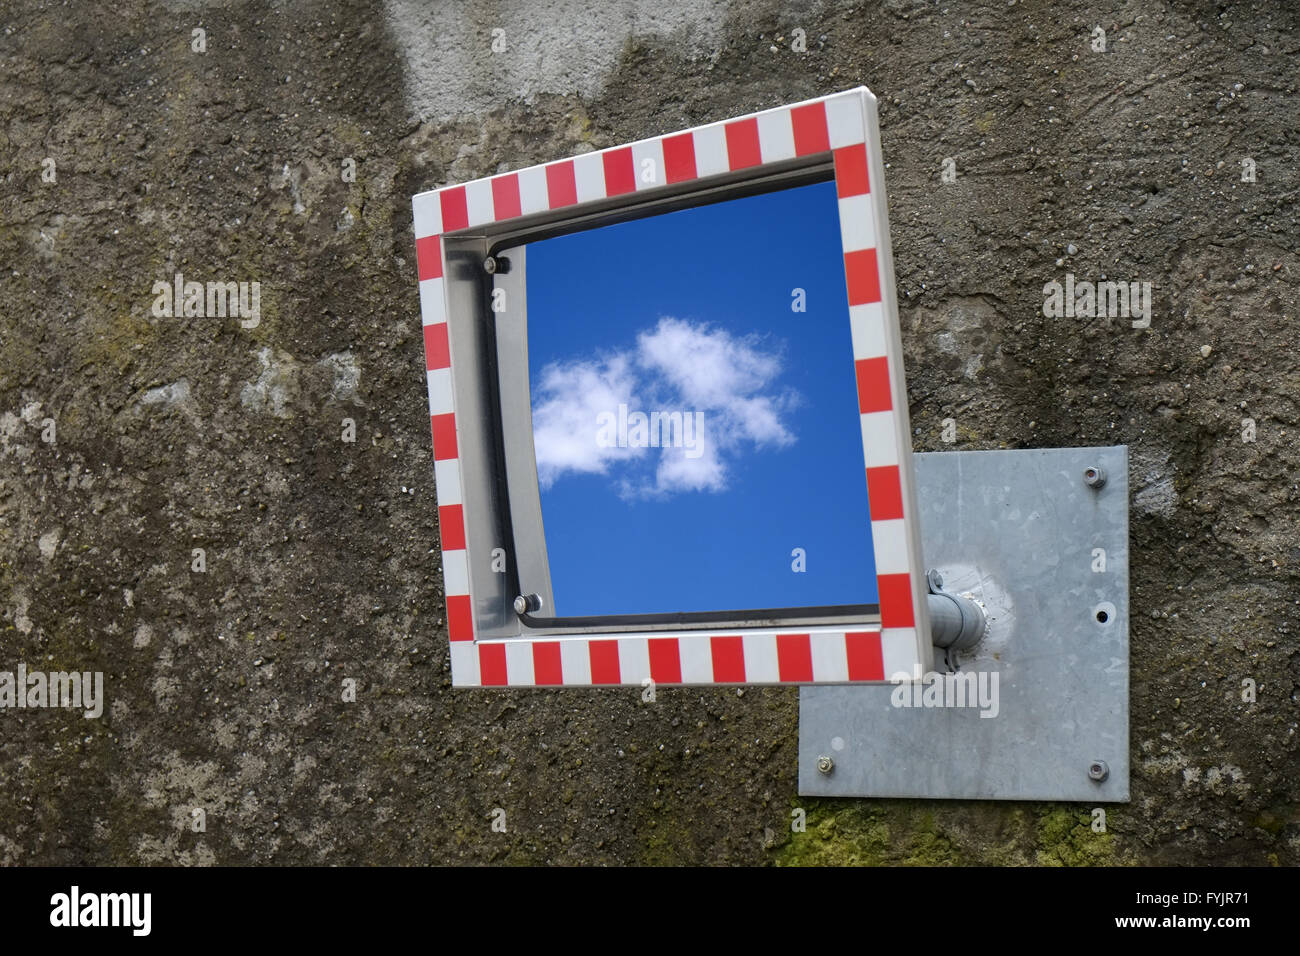 Miroirs avec refelection cloud Banque D'Images